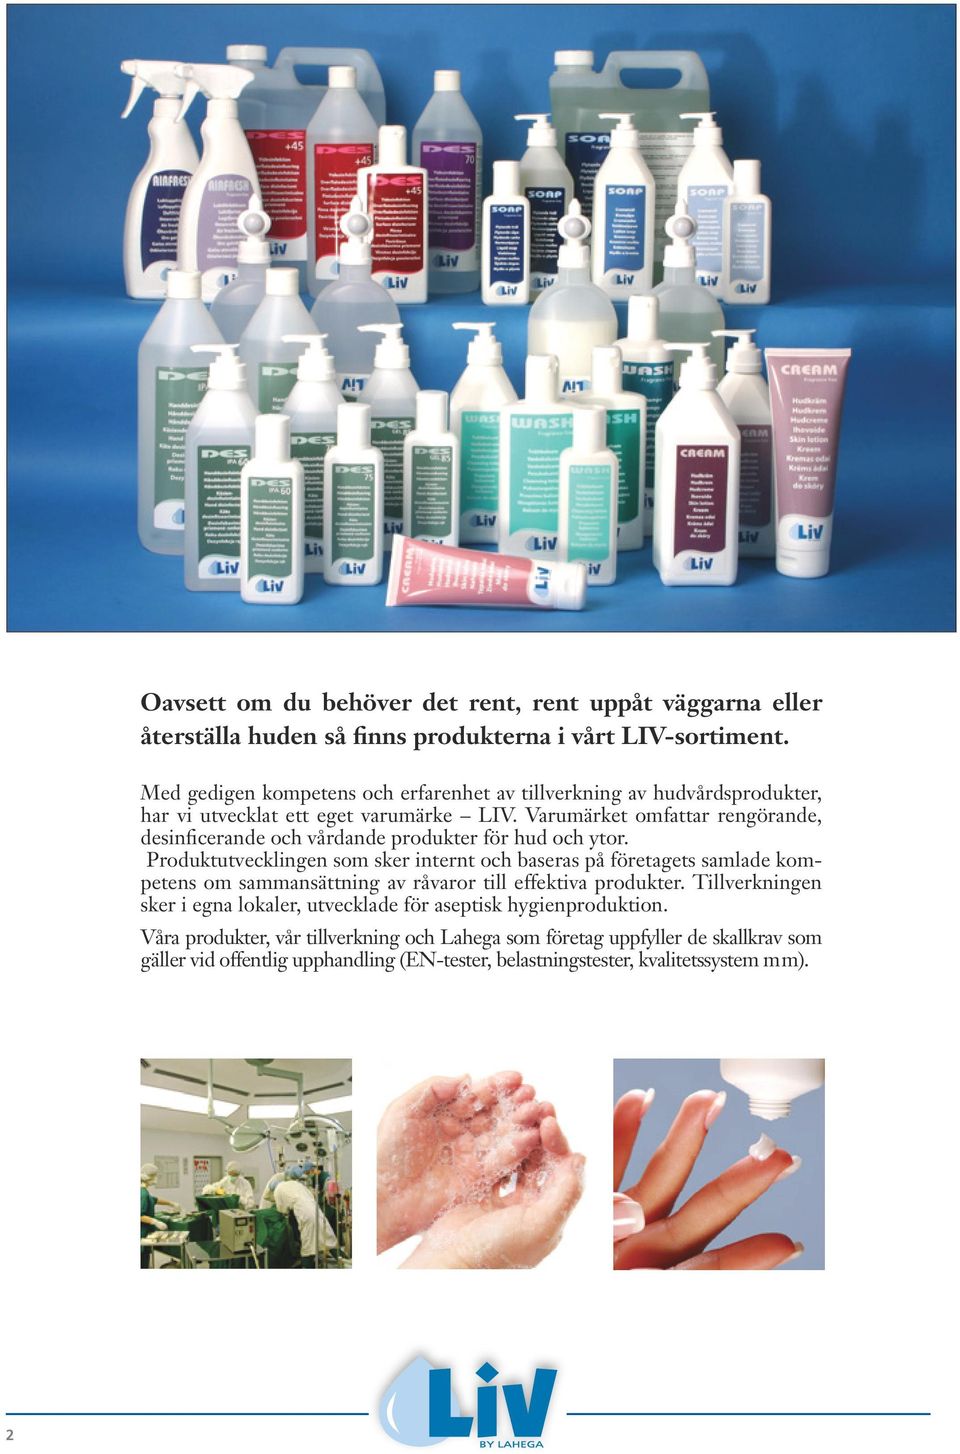 Varumärket omfattar rengörande, desinficerande och vårdande produkter för hud och ytor.